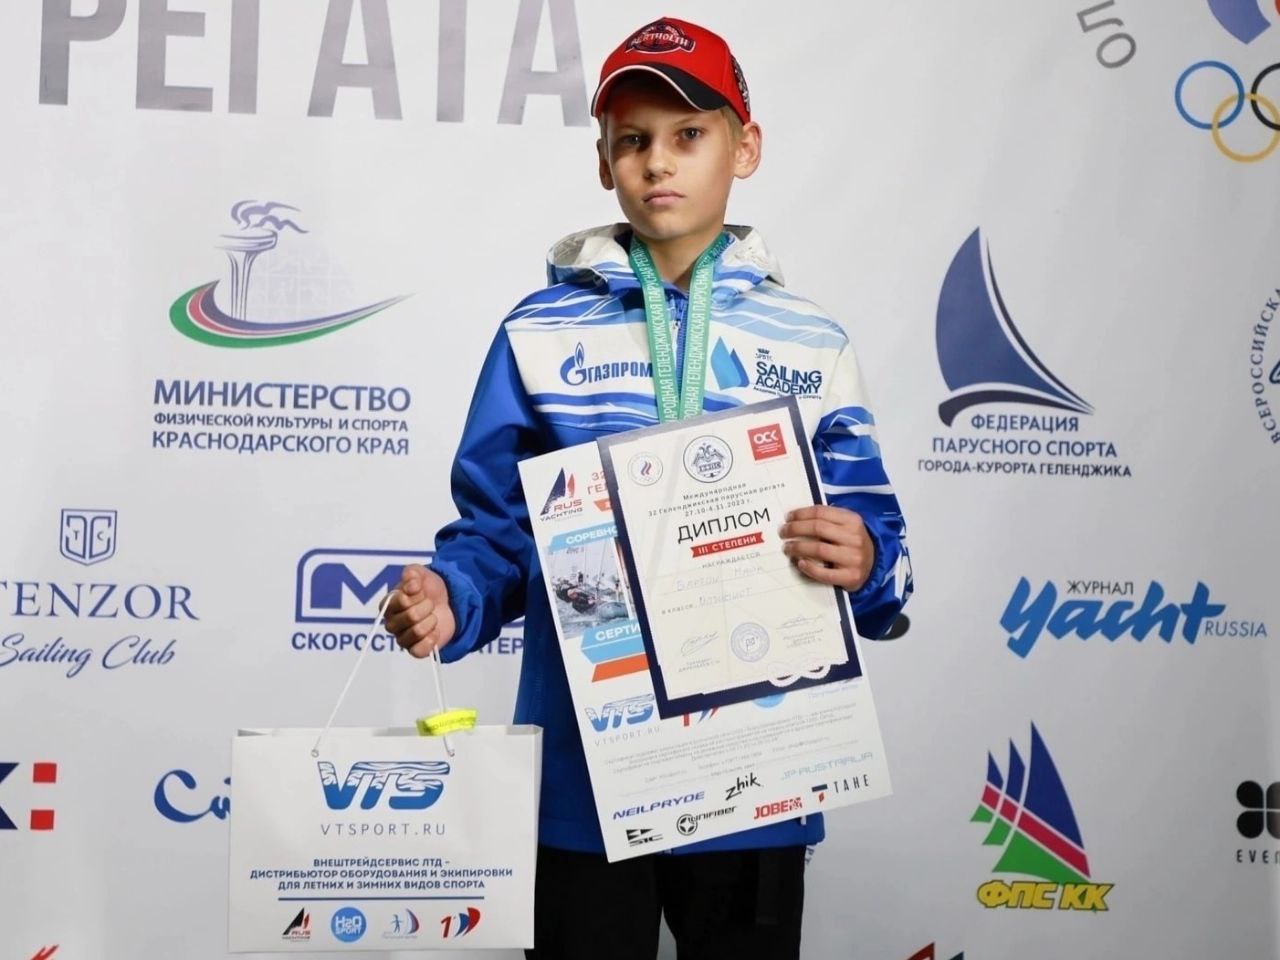 Юные парусники из Калининграда завоевали две бронзовые медали международной регаты